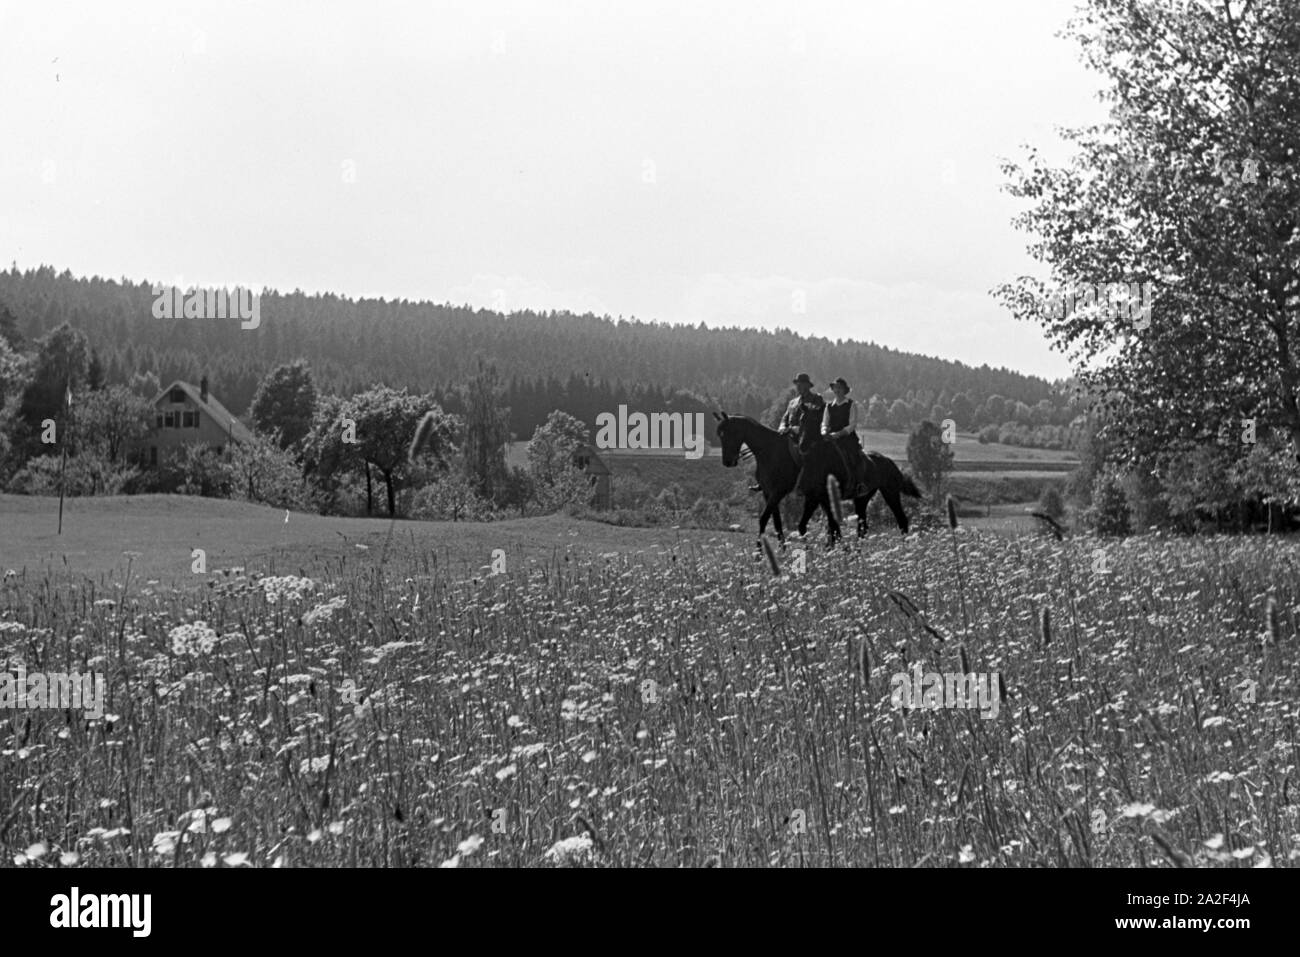 Reiter bei einem Reitausflug im Wald bei Freudenstadt, Deutschland 1930er Jahre. Reiter auf einem Pferd reiten Reise in den Wäldern in der Nähe von Freudenstadt, Deutschland 1930. Stockfoto